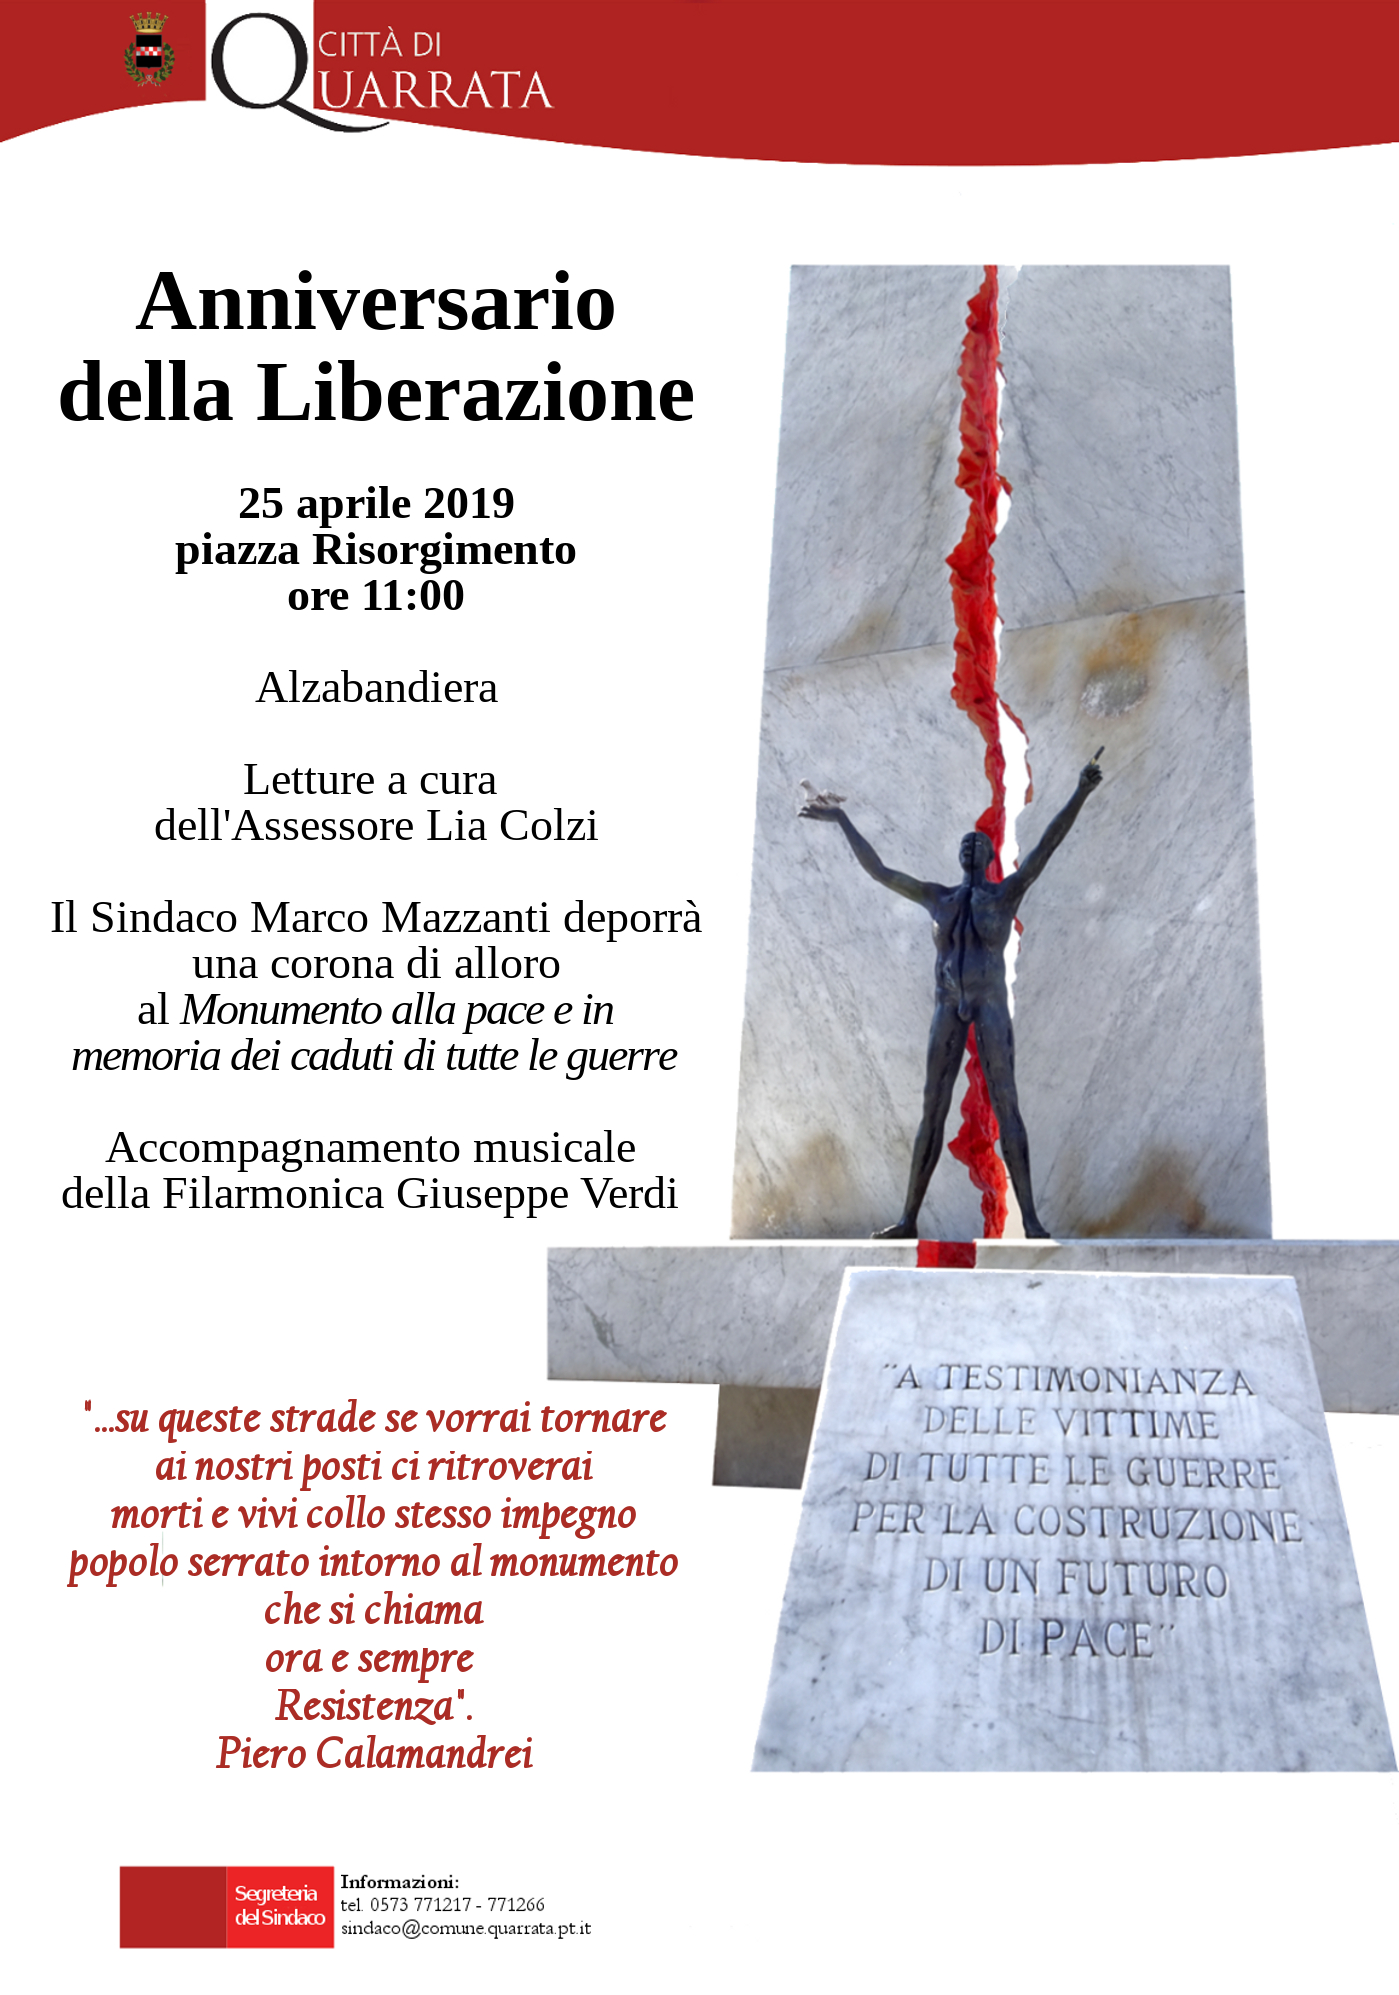 Quarrata celebra l’anniversario della Liberazione dell'Italia dal nazifascismo 